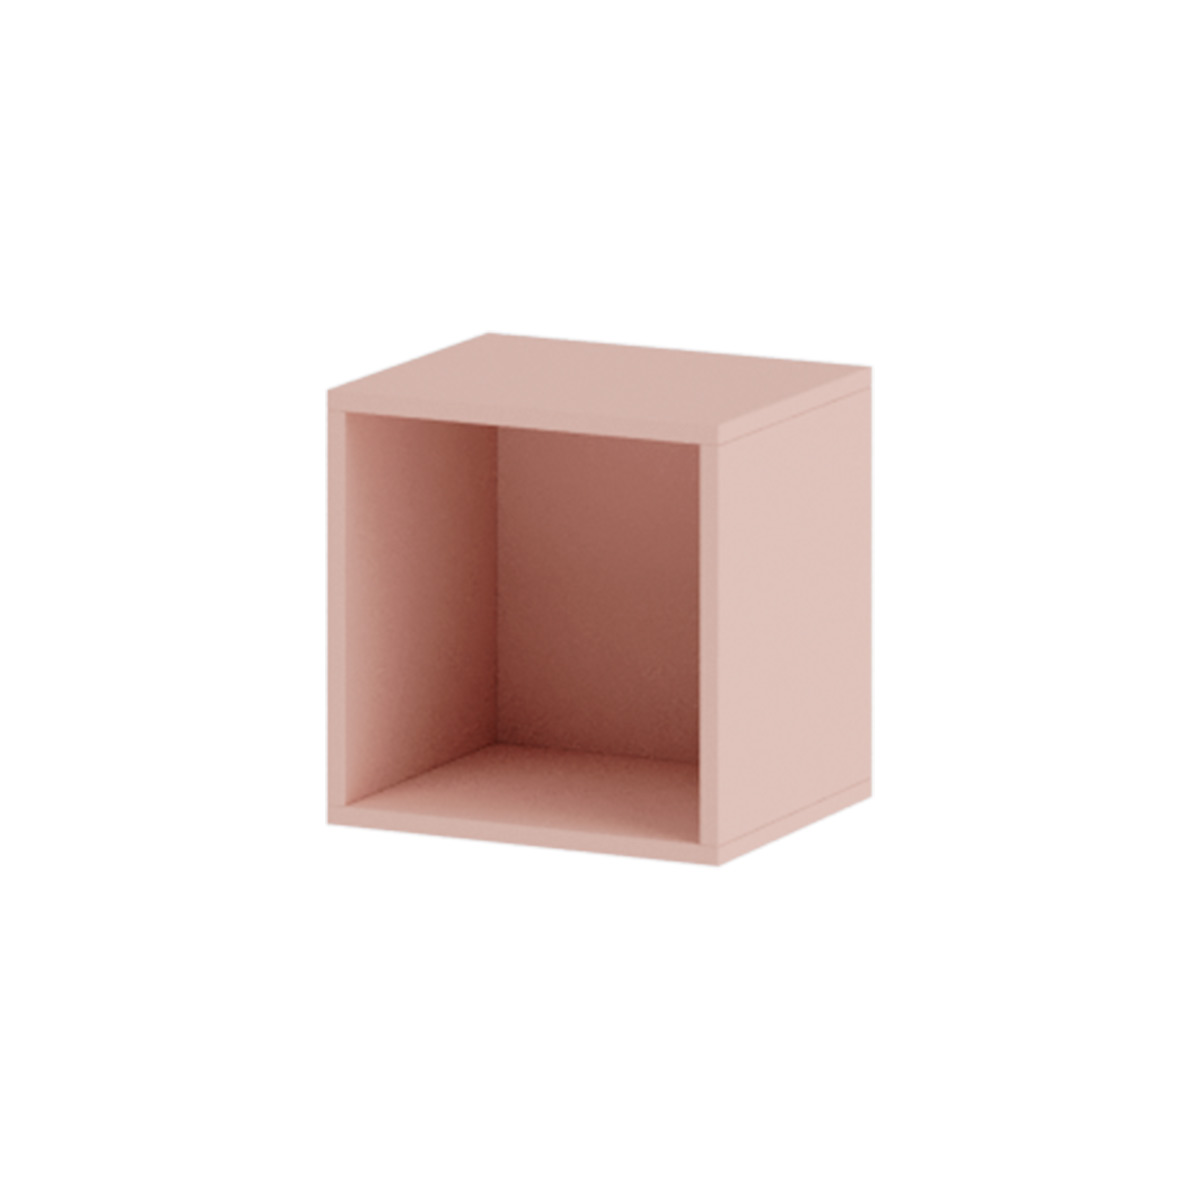 Módulo colgar cubo 27x28x28 cm - Mueblam